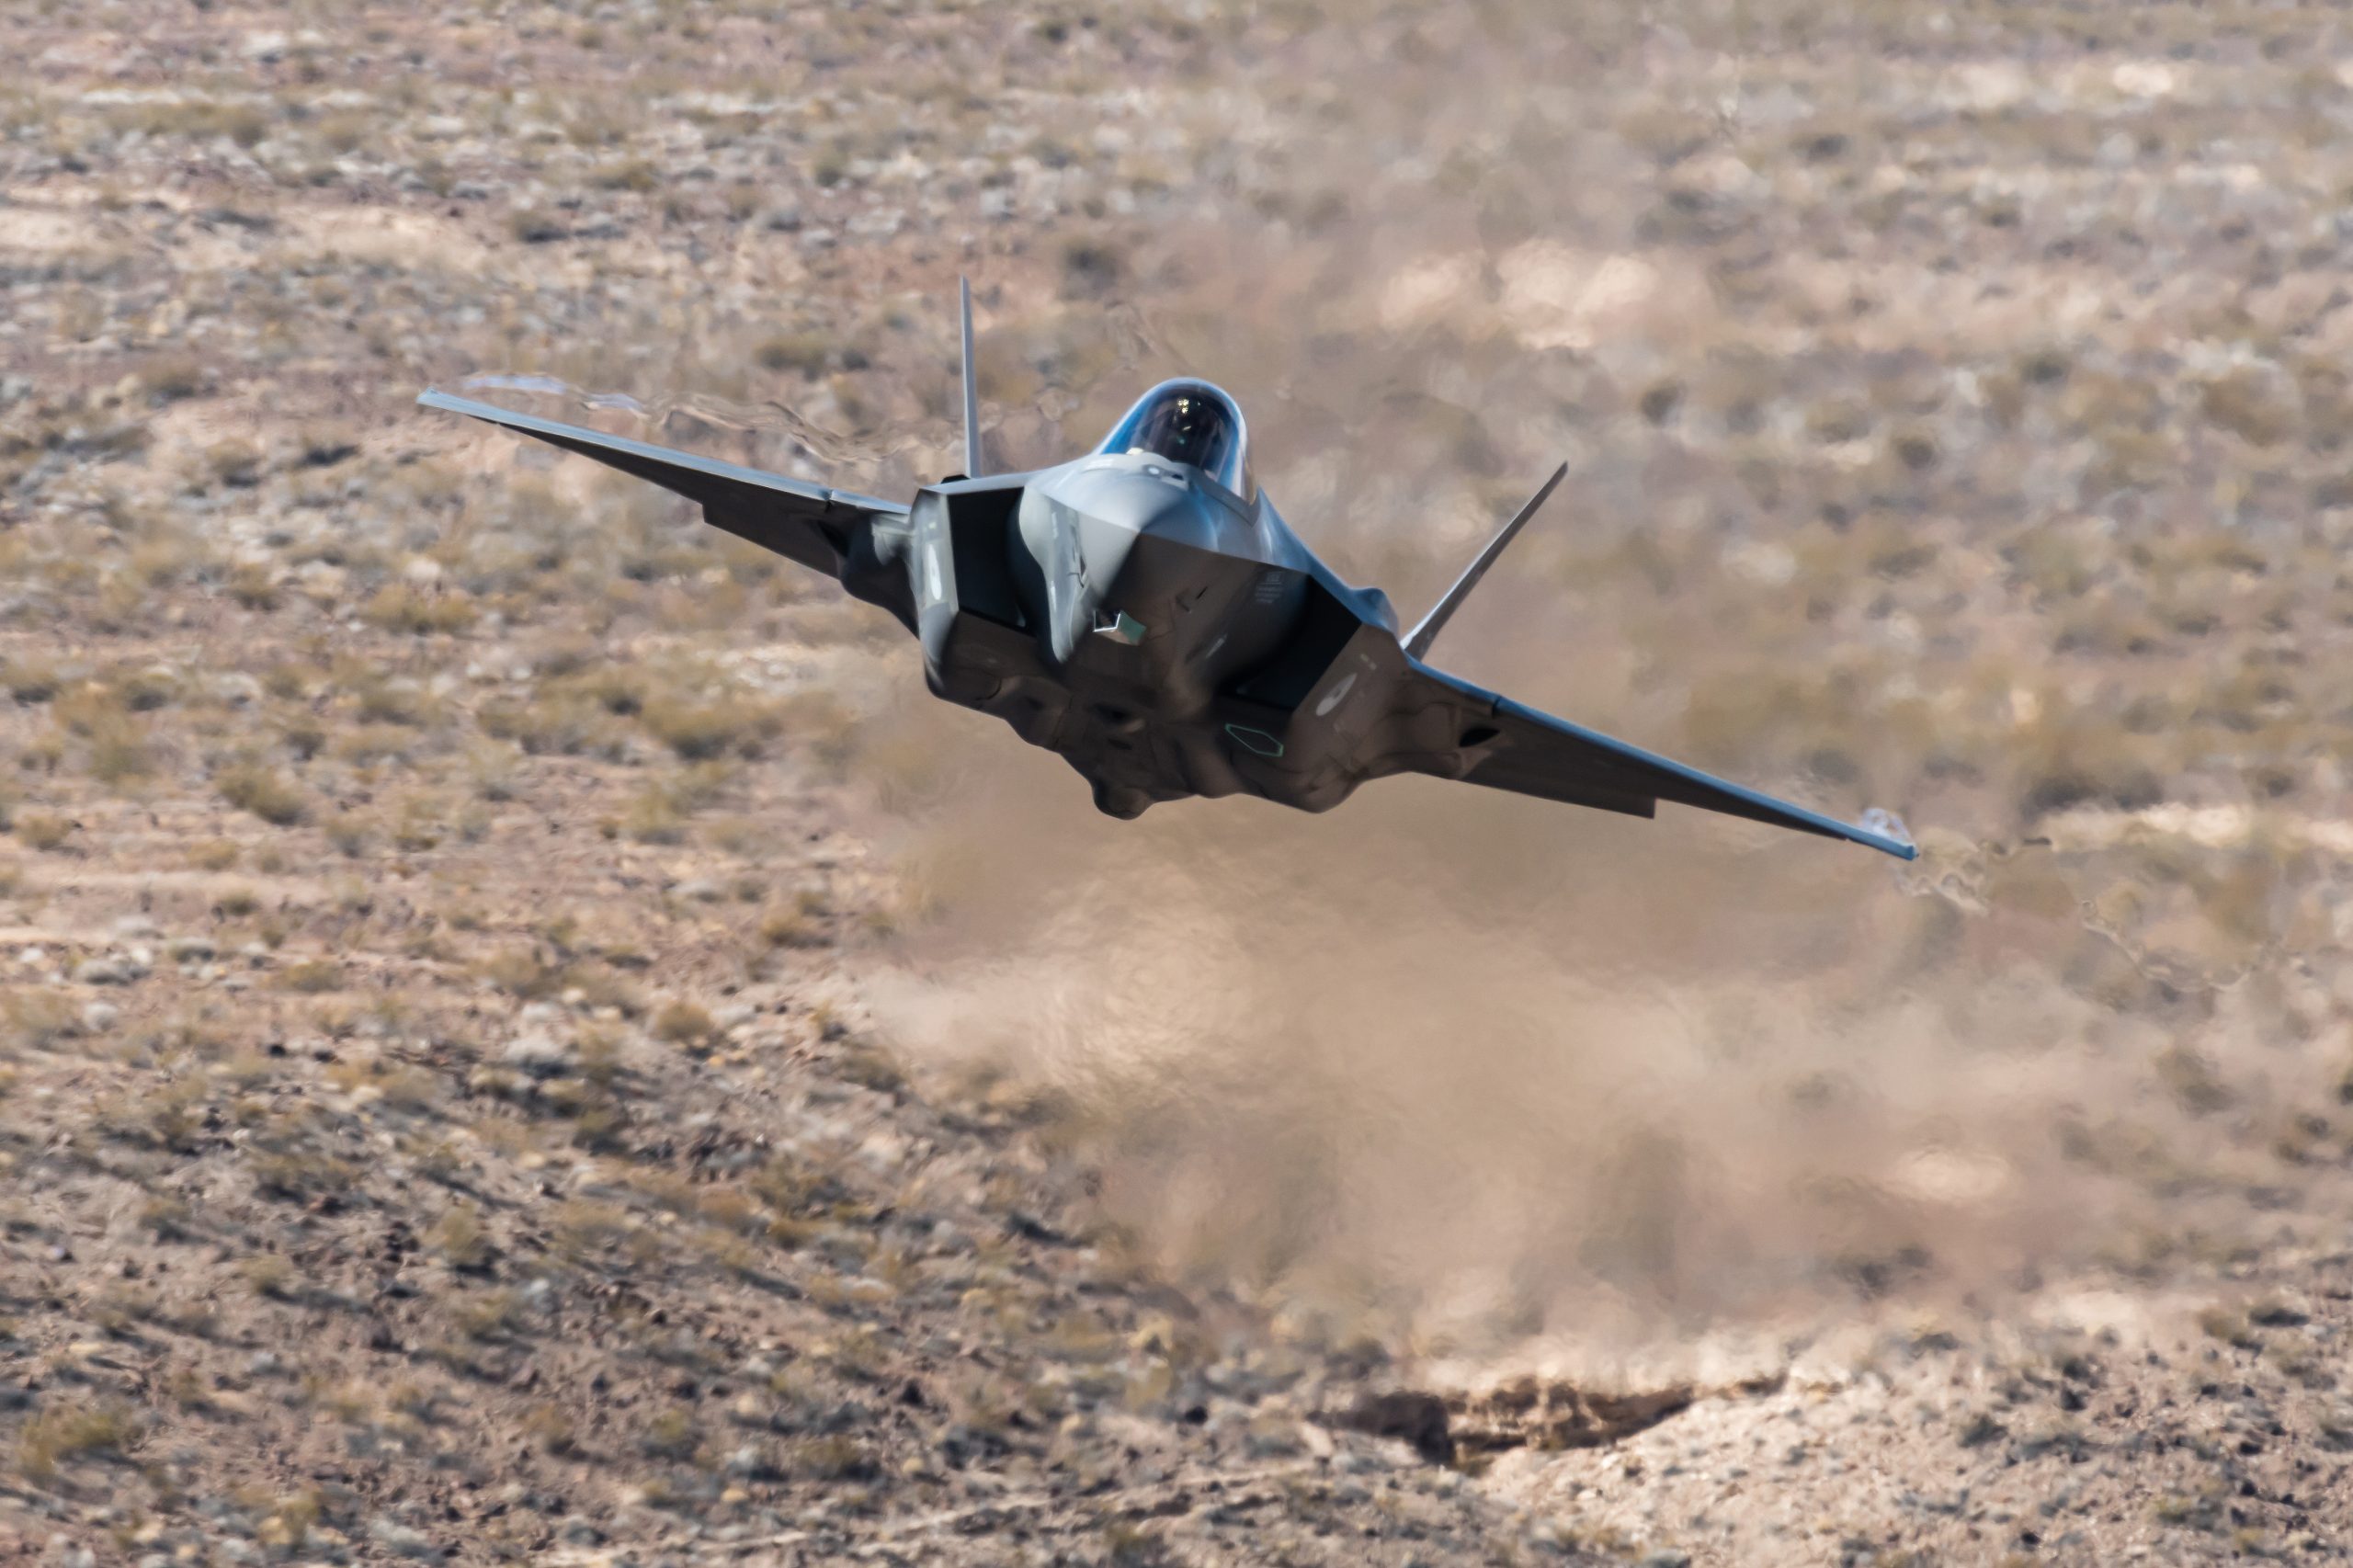 Αμερικανικό Πεντάγωνο: Αυτές θα είναι οι τιμές του F-35 για το 2020, 2021 και 2022